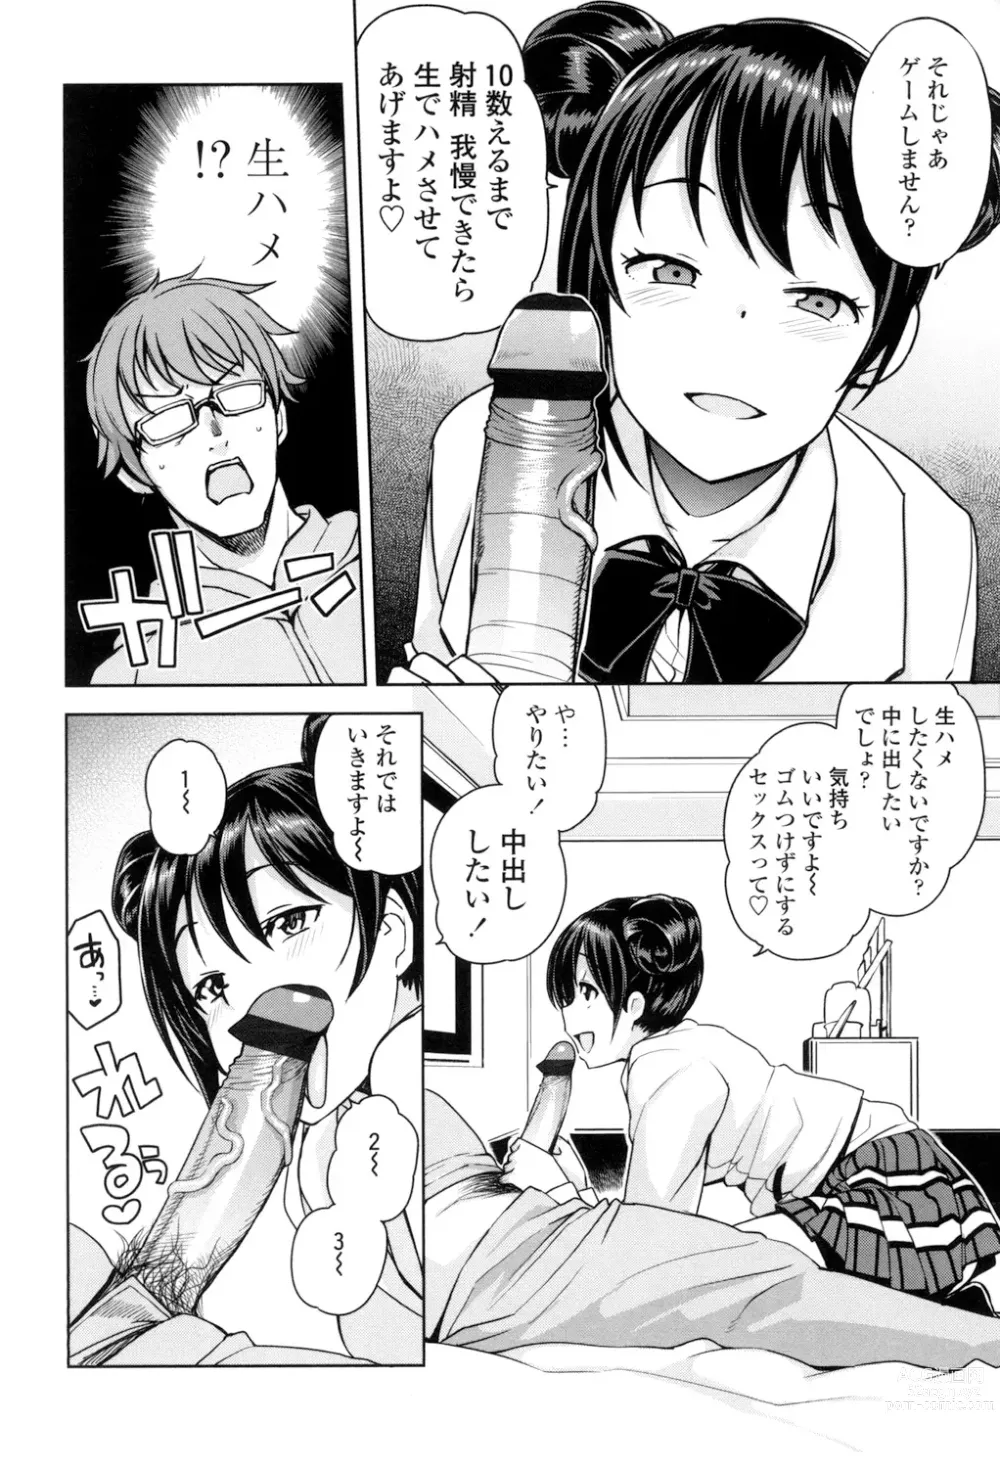 Page 9 of manga Doutei Danshi Kousei Iinkai - Virginity Boy Rebirth Committee